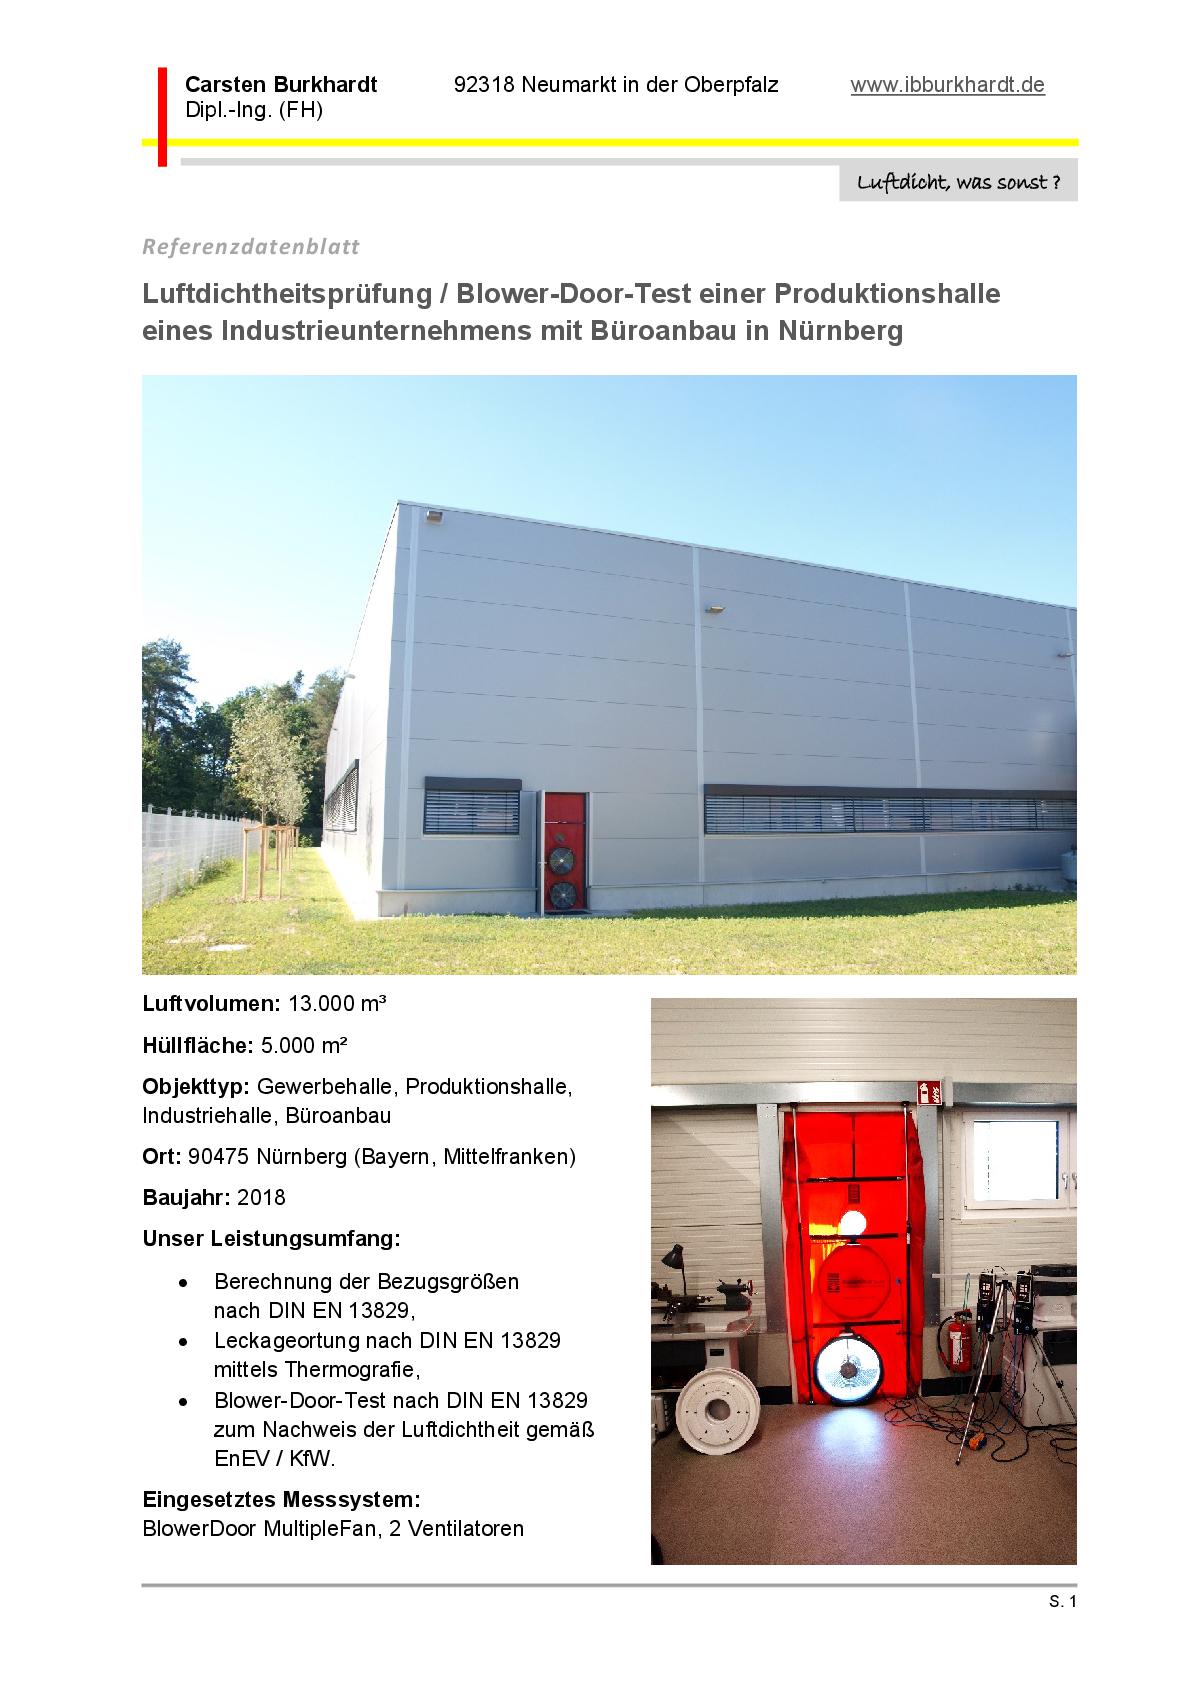 Produktionshalle eines Industrieunternehmens mit Büroanbau in Nürnberg (Bayern, Mittelfranken)